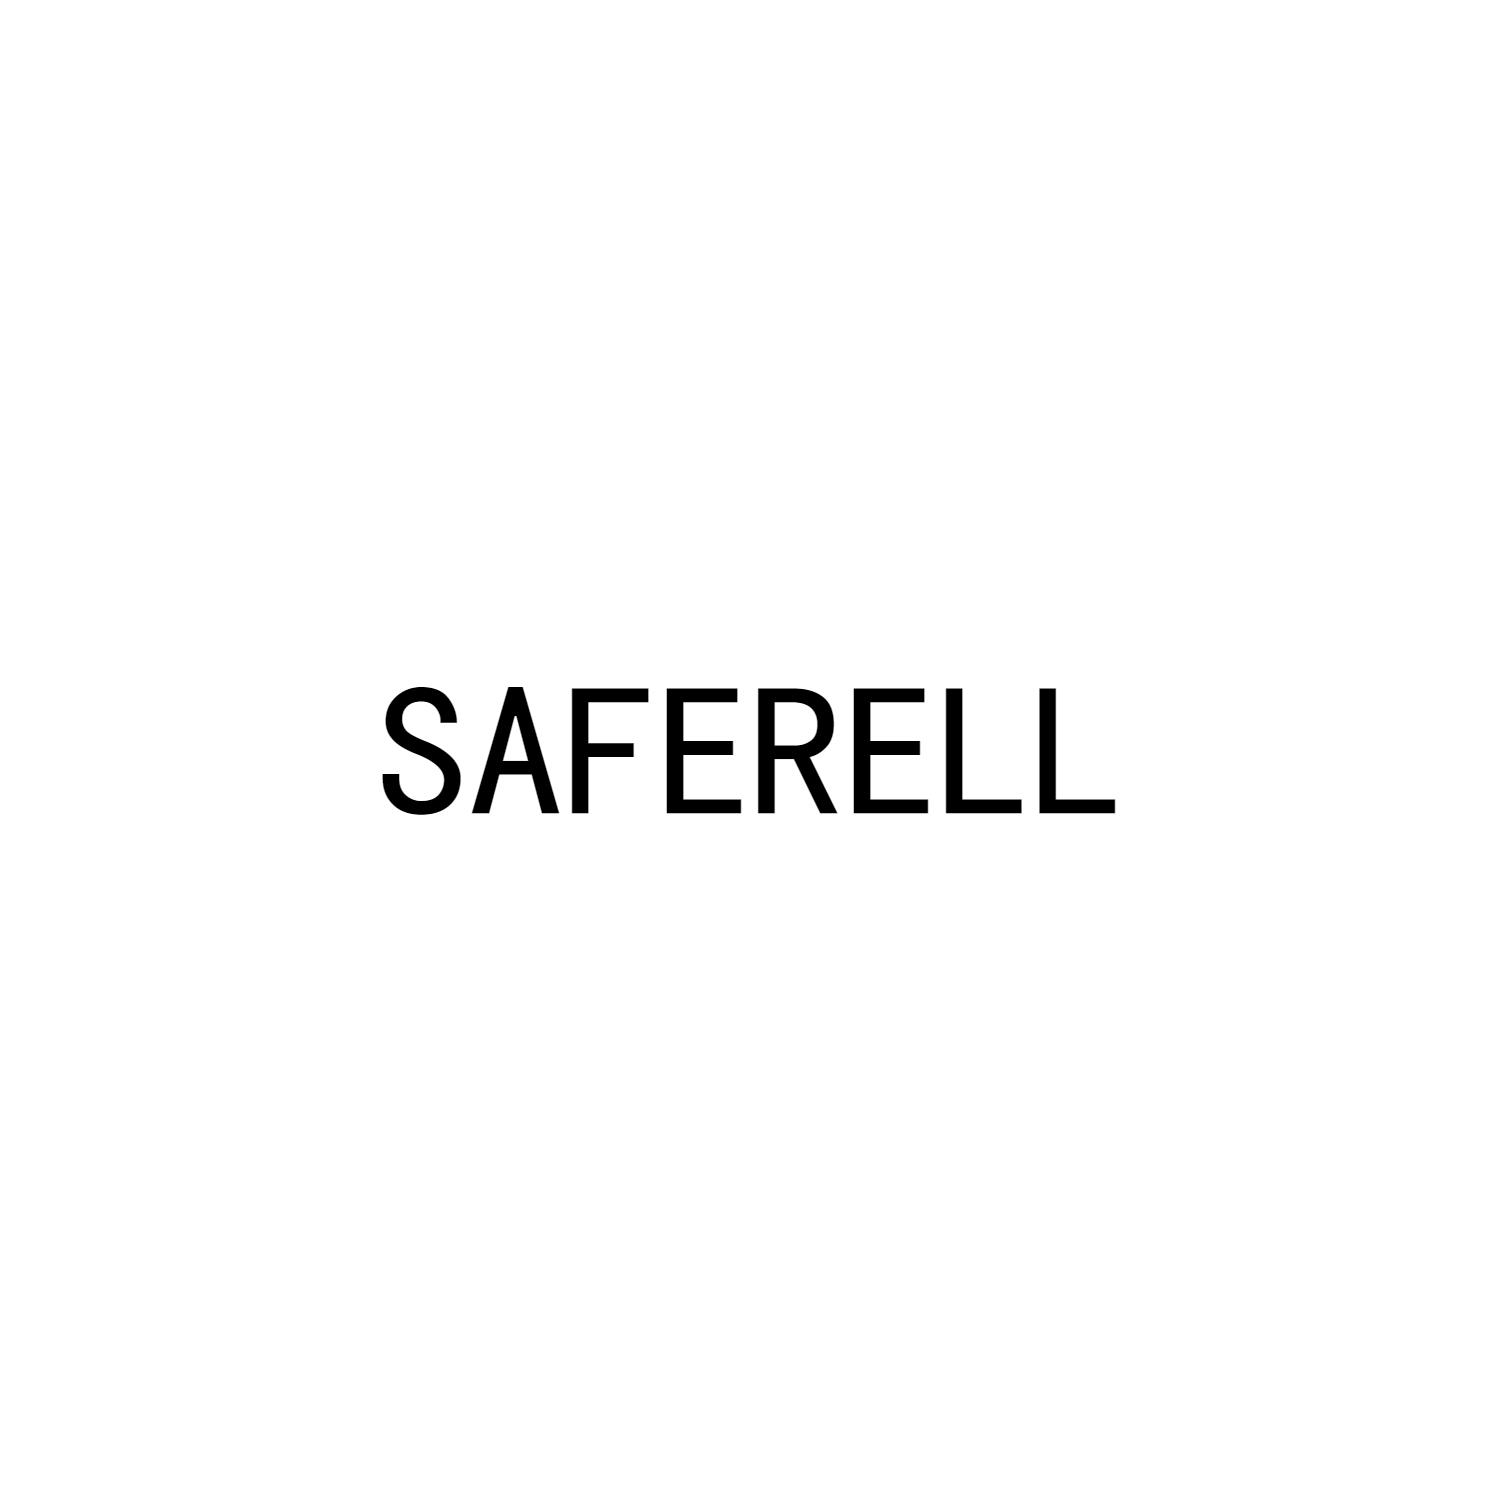 SAFERELL